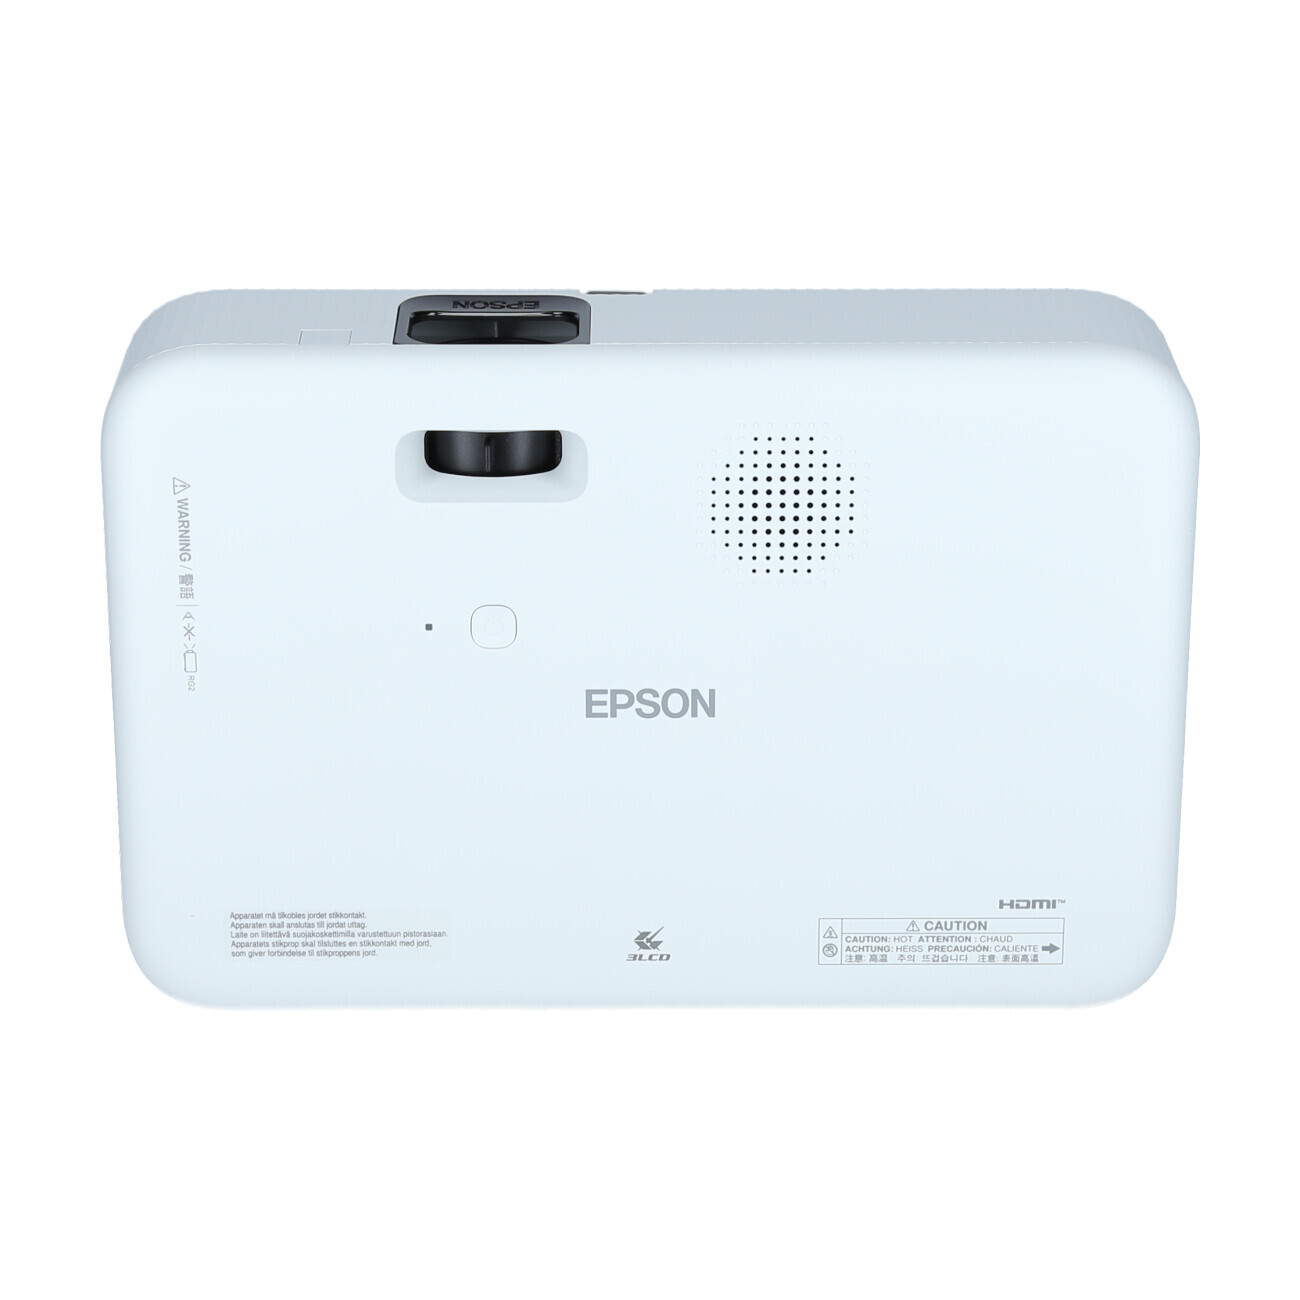 Vorschau: Epson CO-FH02 - Android-TV Beamer mit 3000 ANSI-Lumen und Full HD Auflösung - Demo